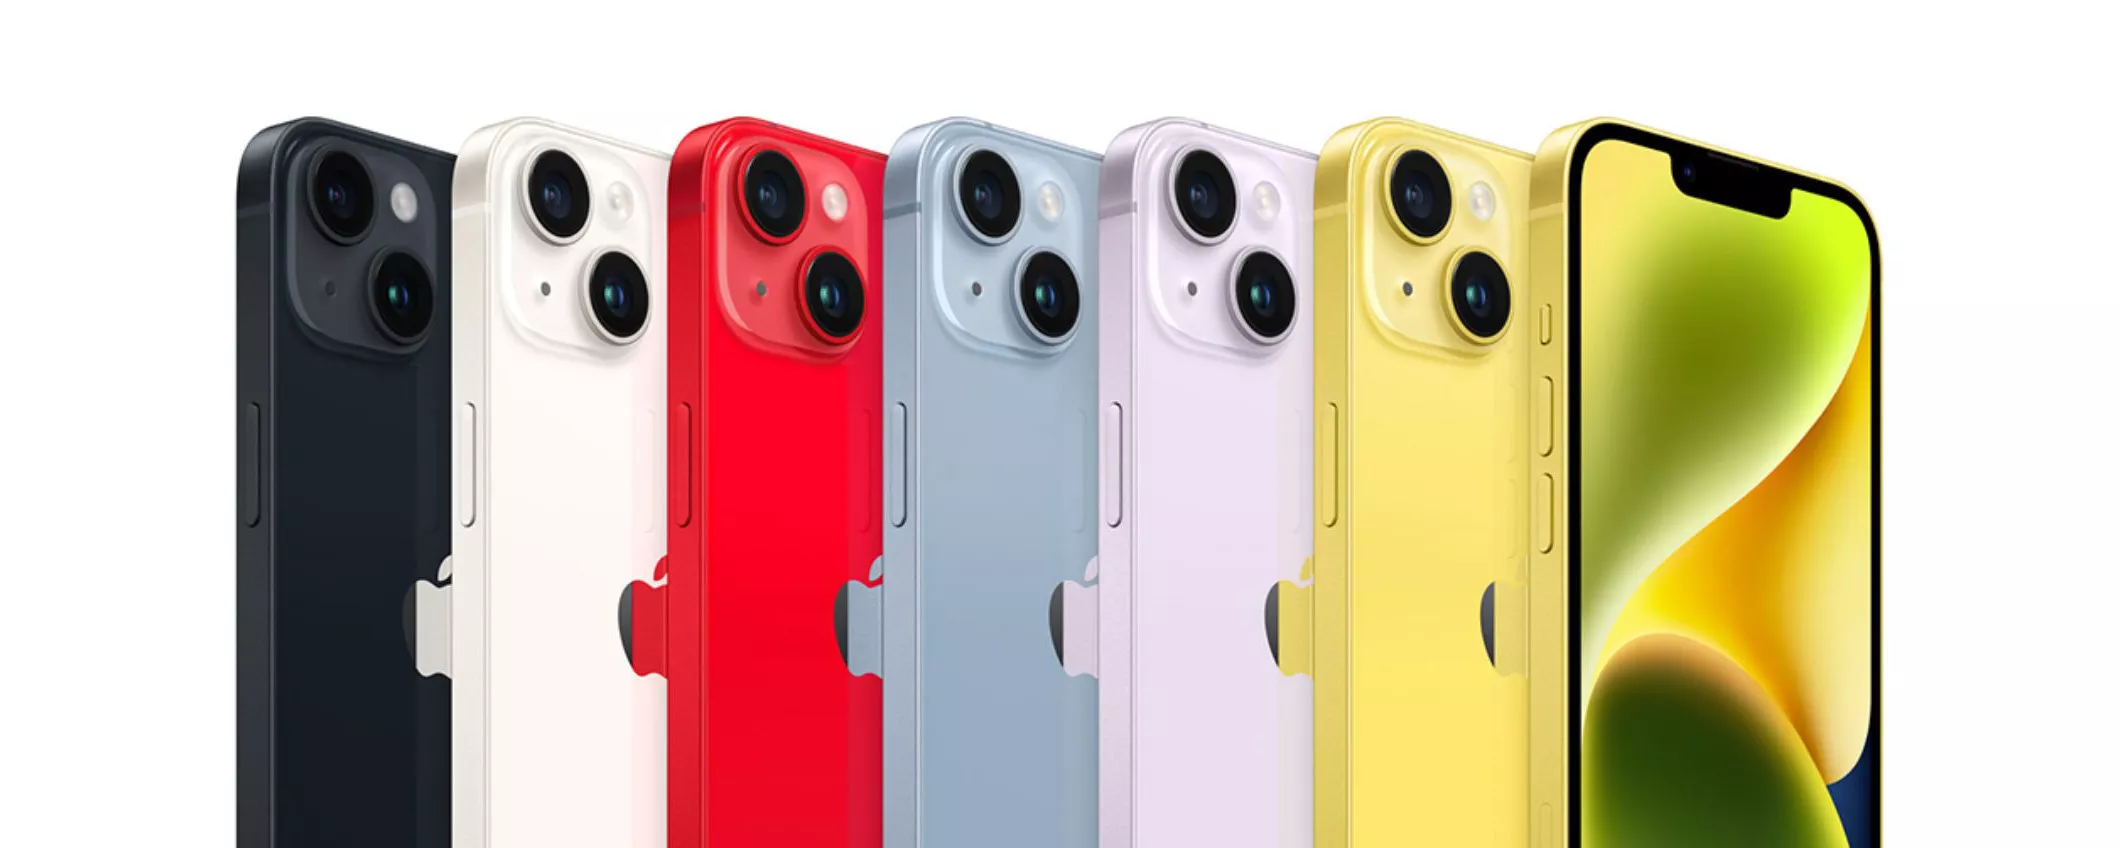 iPhone 15 avrà una colorazione mai vista prima